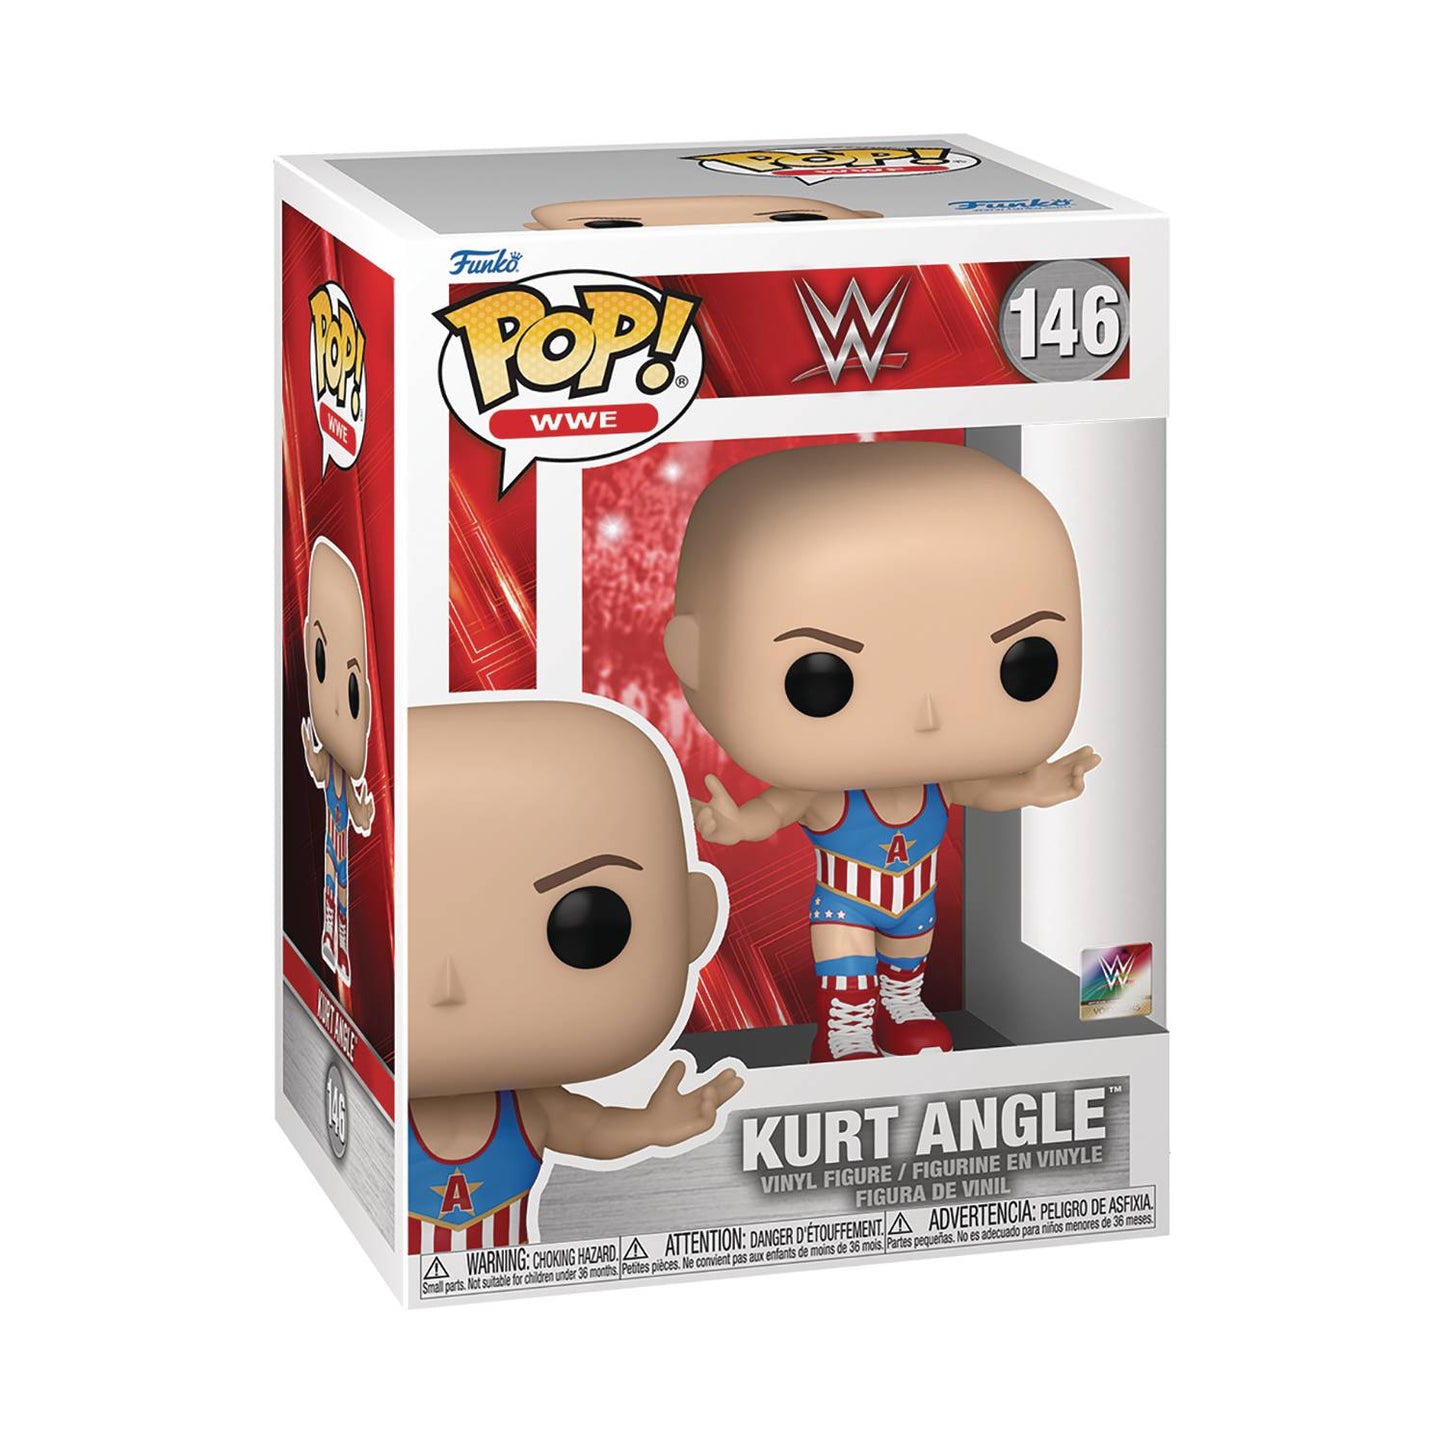 Funko WWE Pop!: Kurt Angle #146